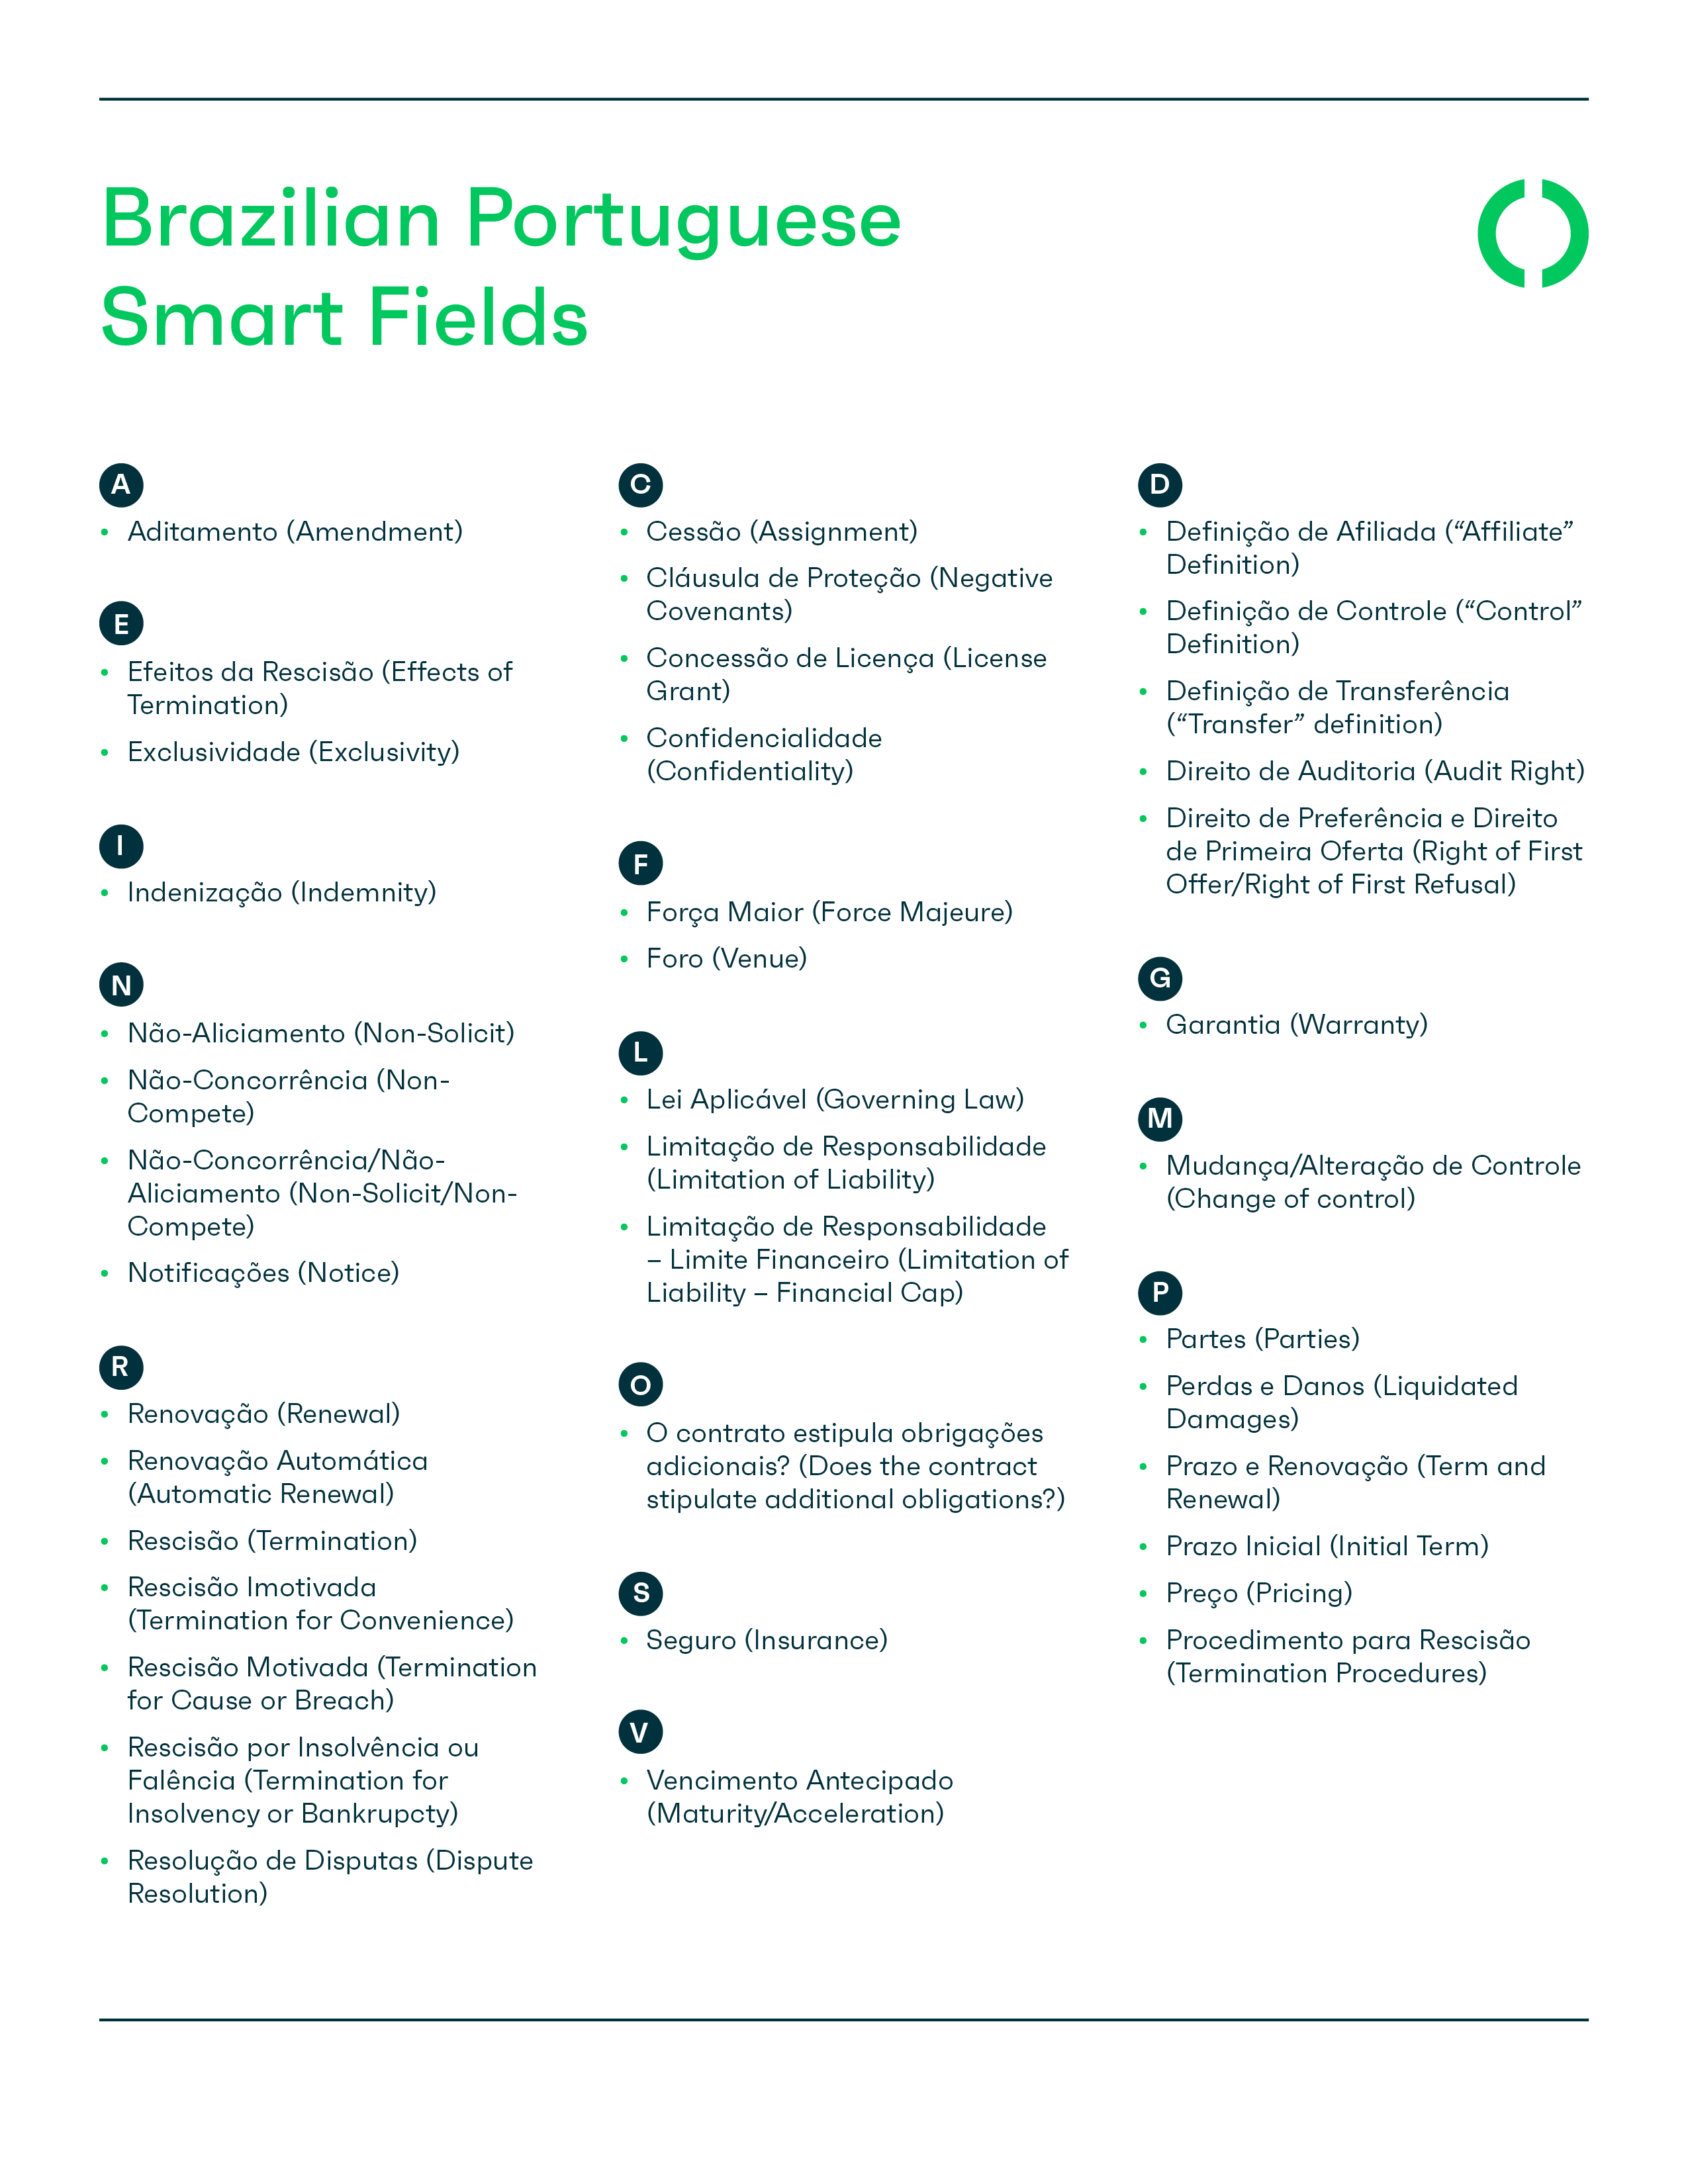 List of Brazilian Portuguese Smart Fields